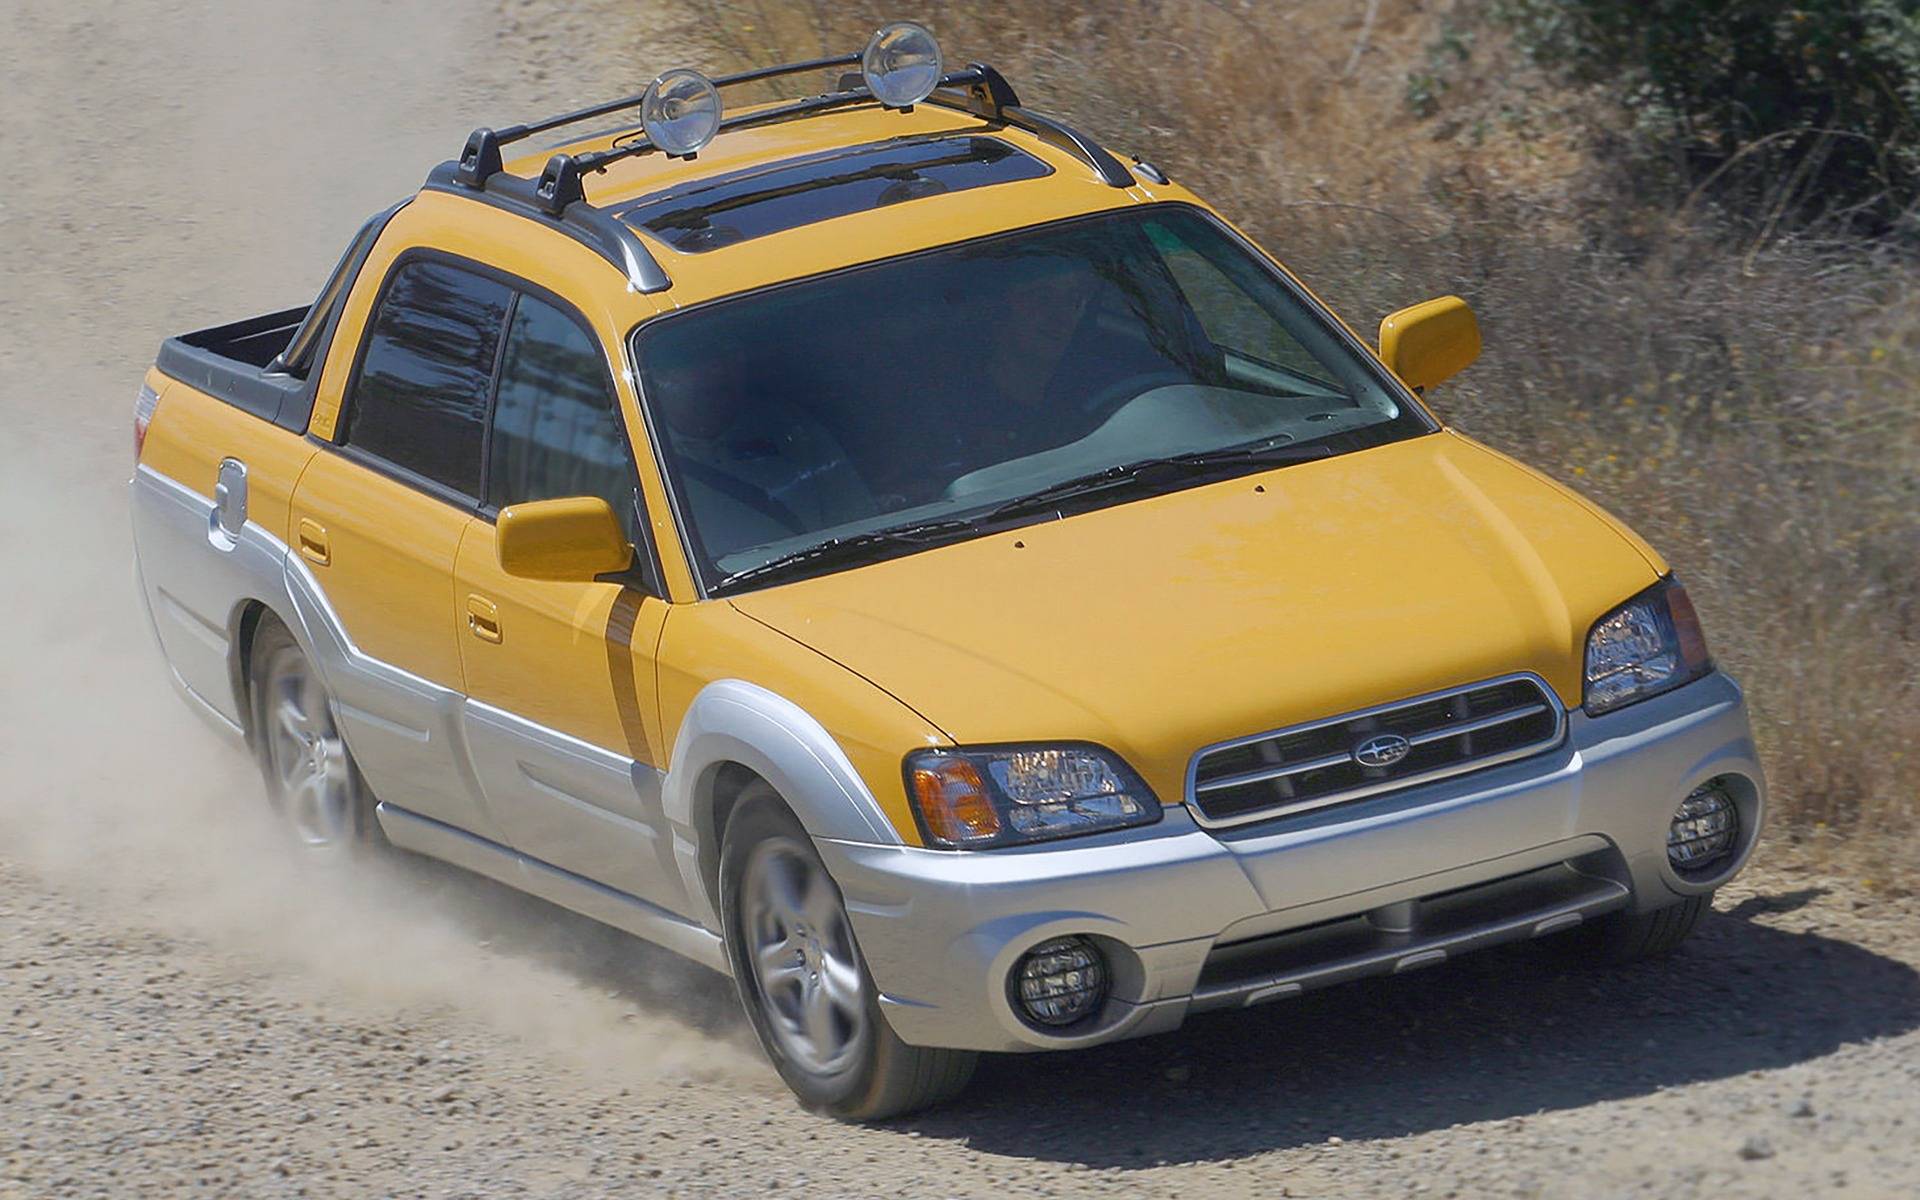 Subaru Baja gele truck rijdt op onverharde weg